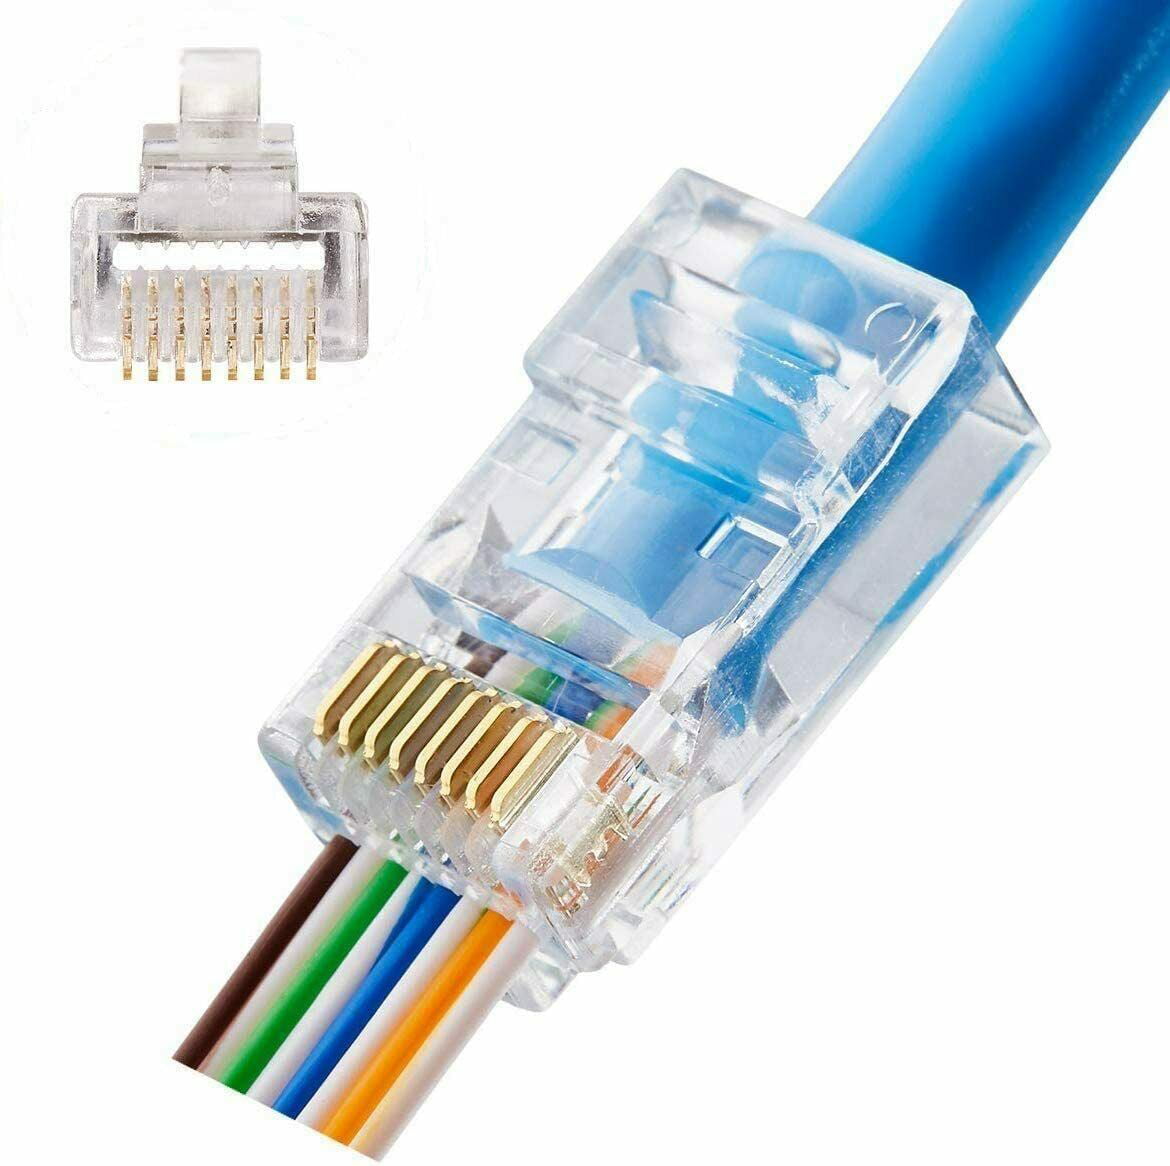 EZ RJ45 CAT6 Connectors Clips Crimp LAN Network Ethernet Cable Pass Through UTP 